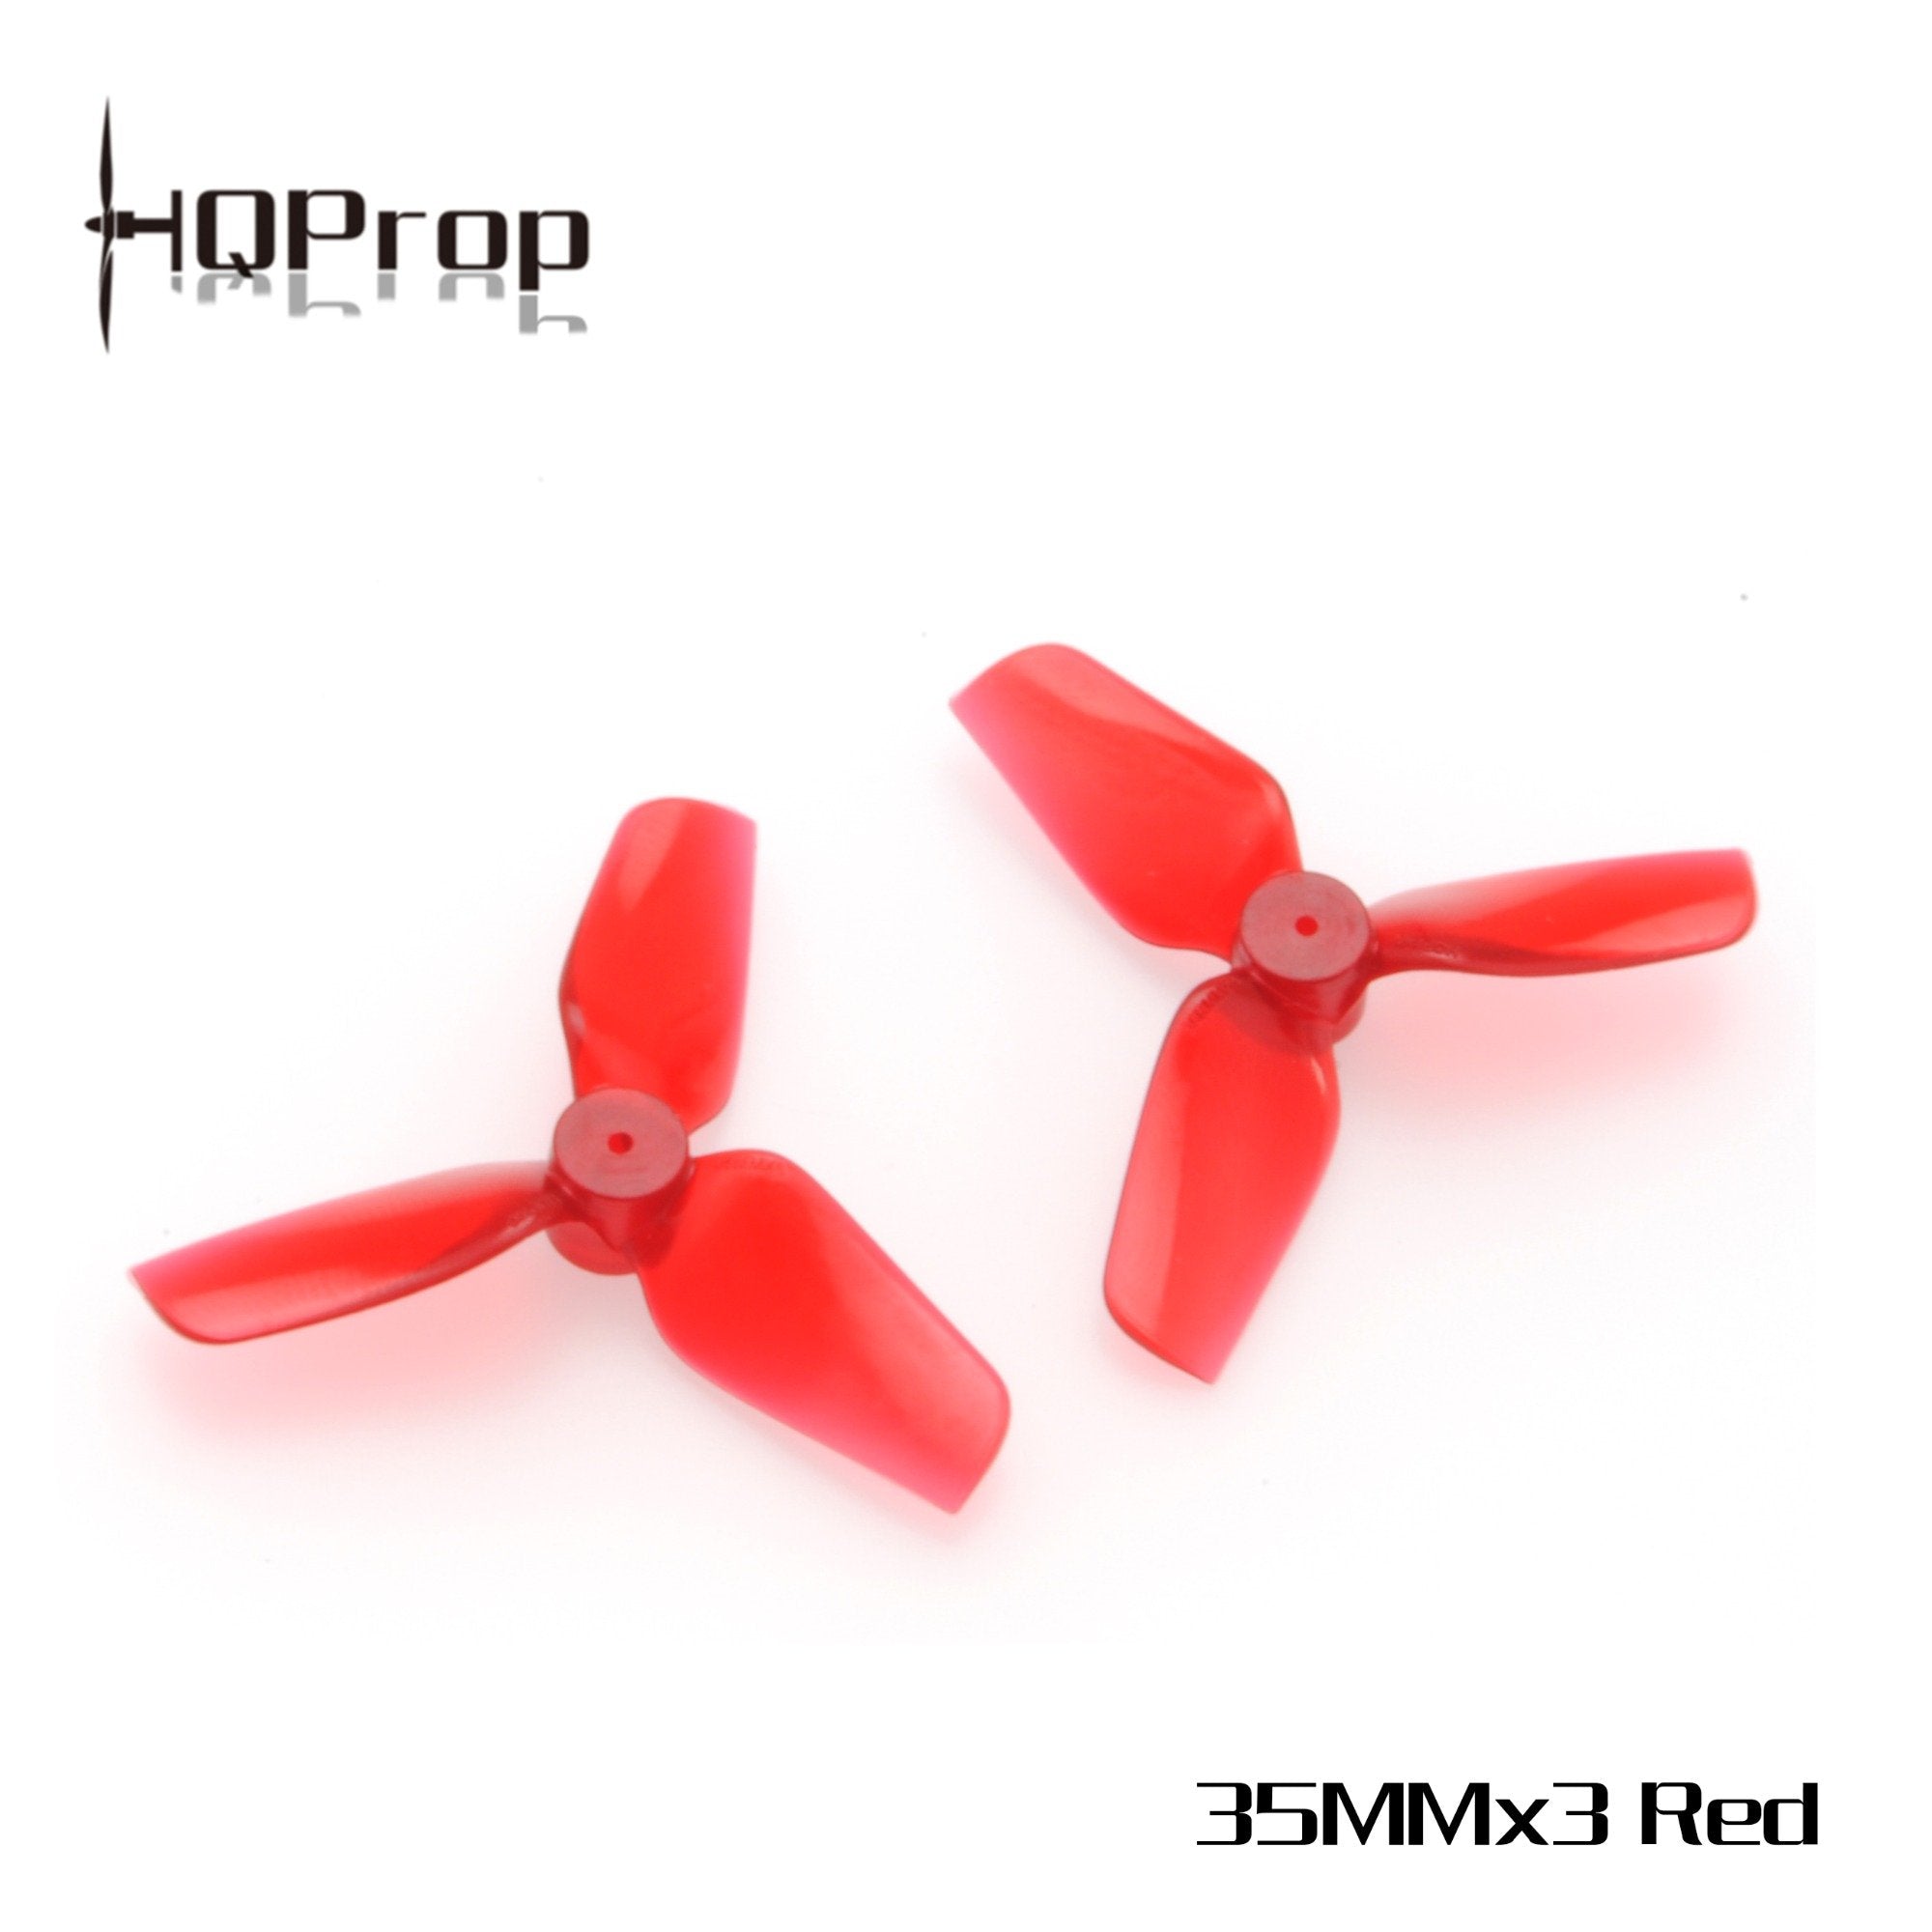 HQProp Micro Whoop Prop 35MMX3 Propellers 3 - HQProp - Drone Authority